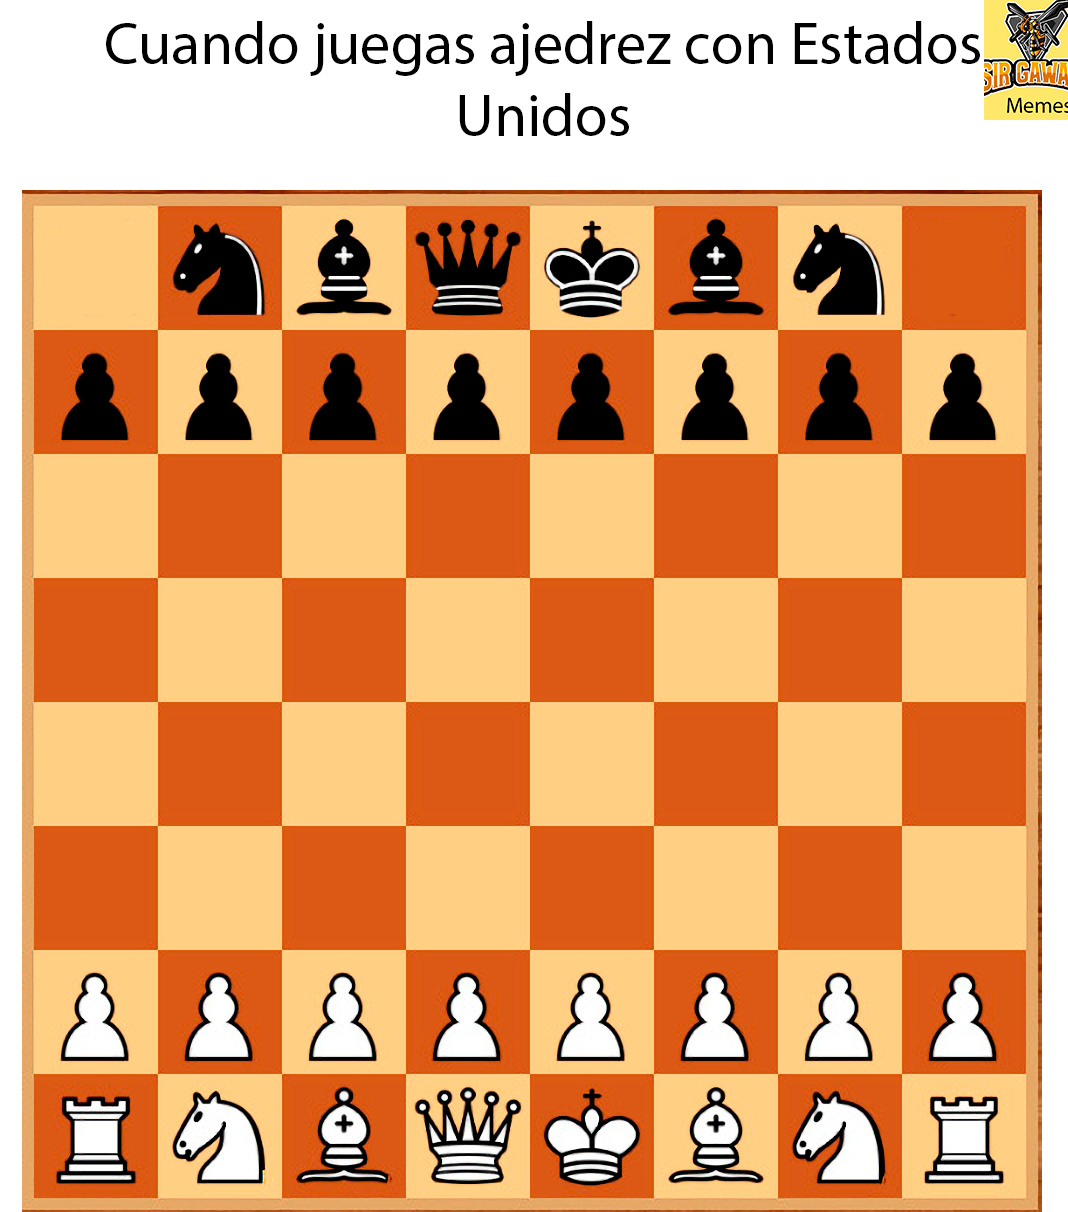 Donde juegan los estadounidenses al ajedrez?